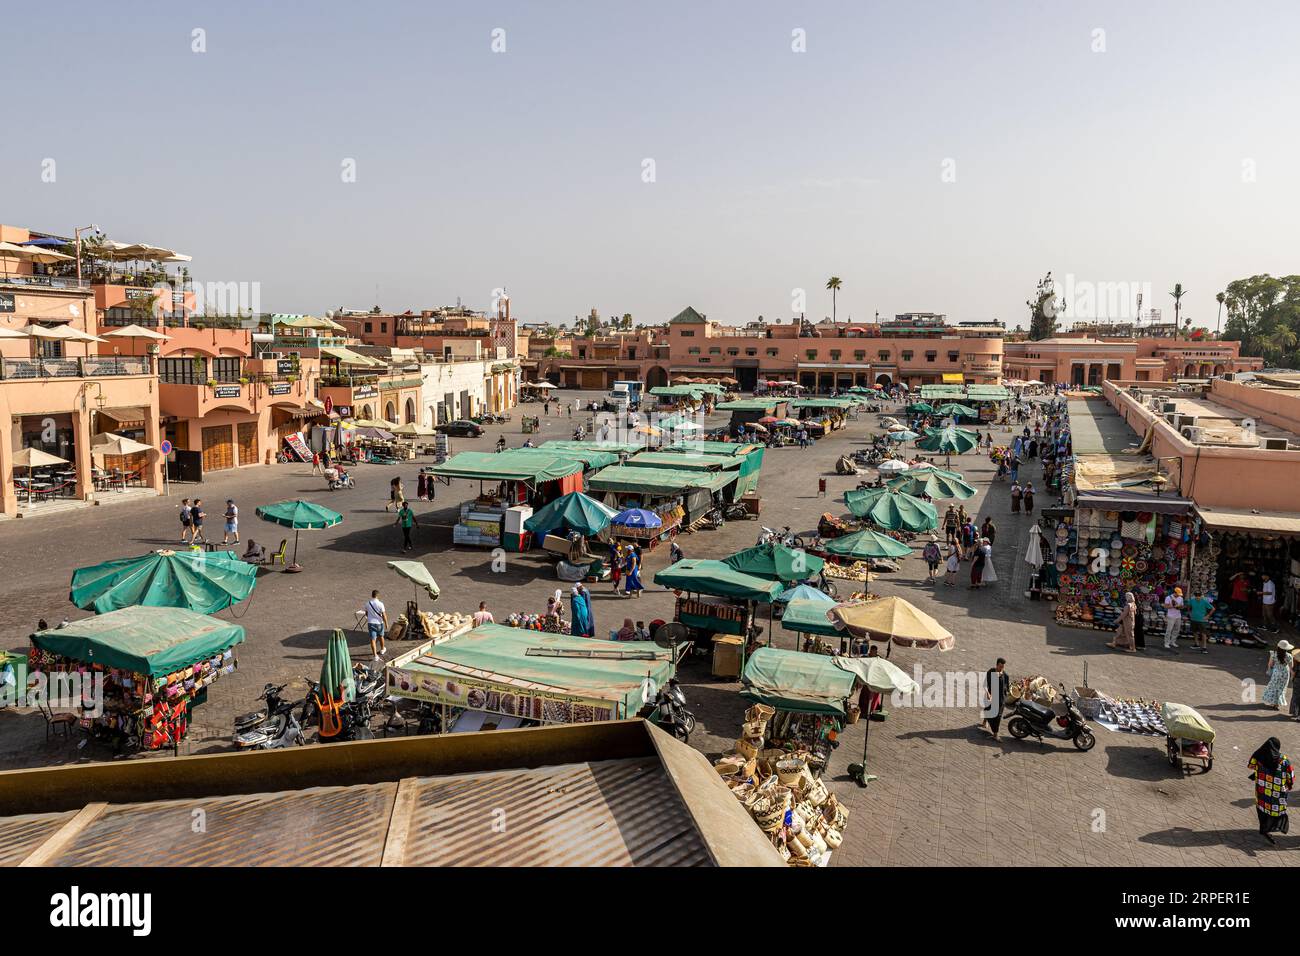 Marocco - Marrakech - Patrimonio dell'Umanità dell'UNESCO - la famosa piazza Jemaa El Fnaa nel centro della medina (città vecchia) Foto Stock